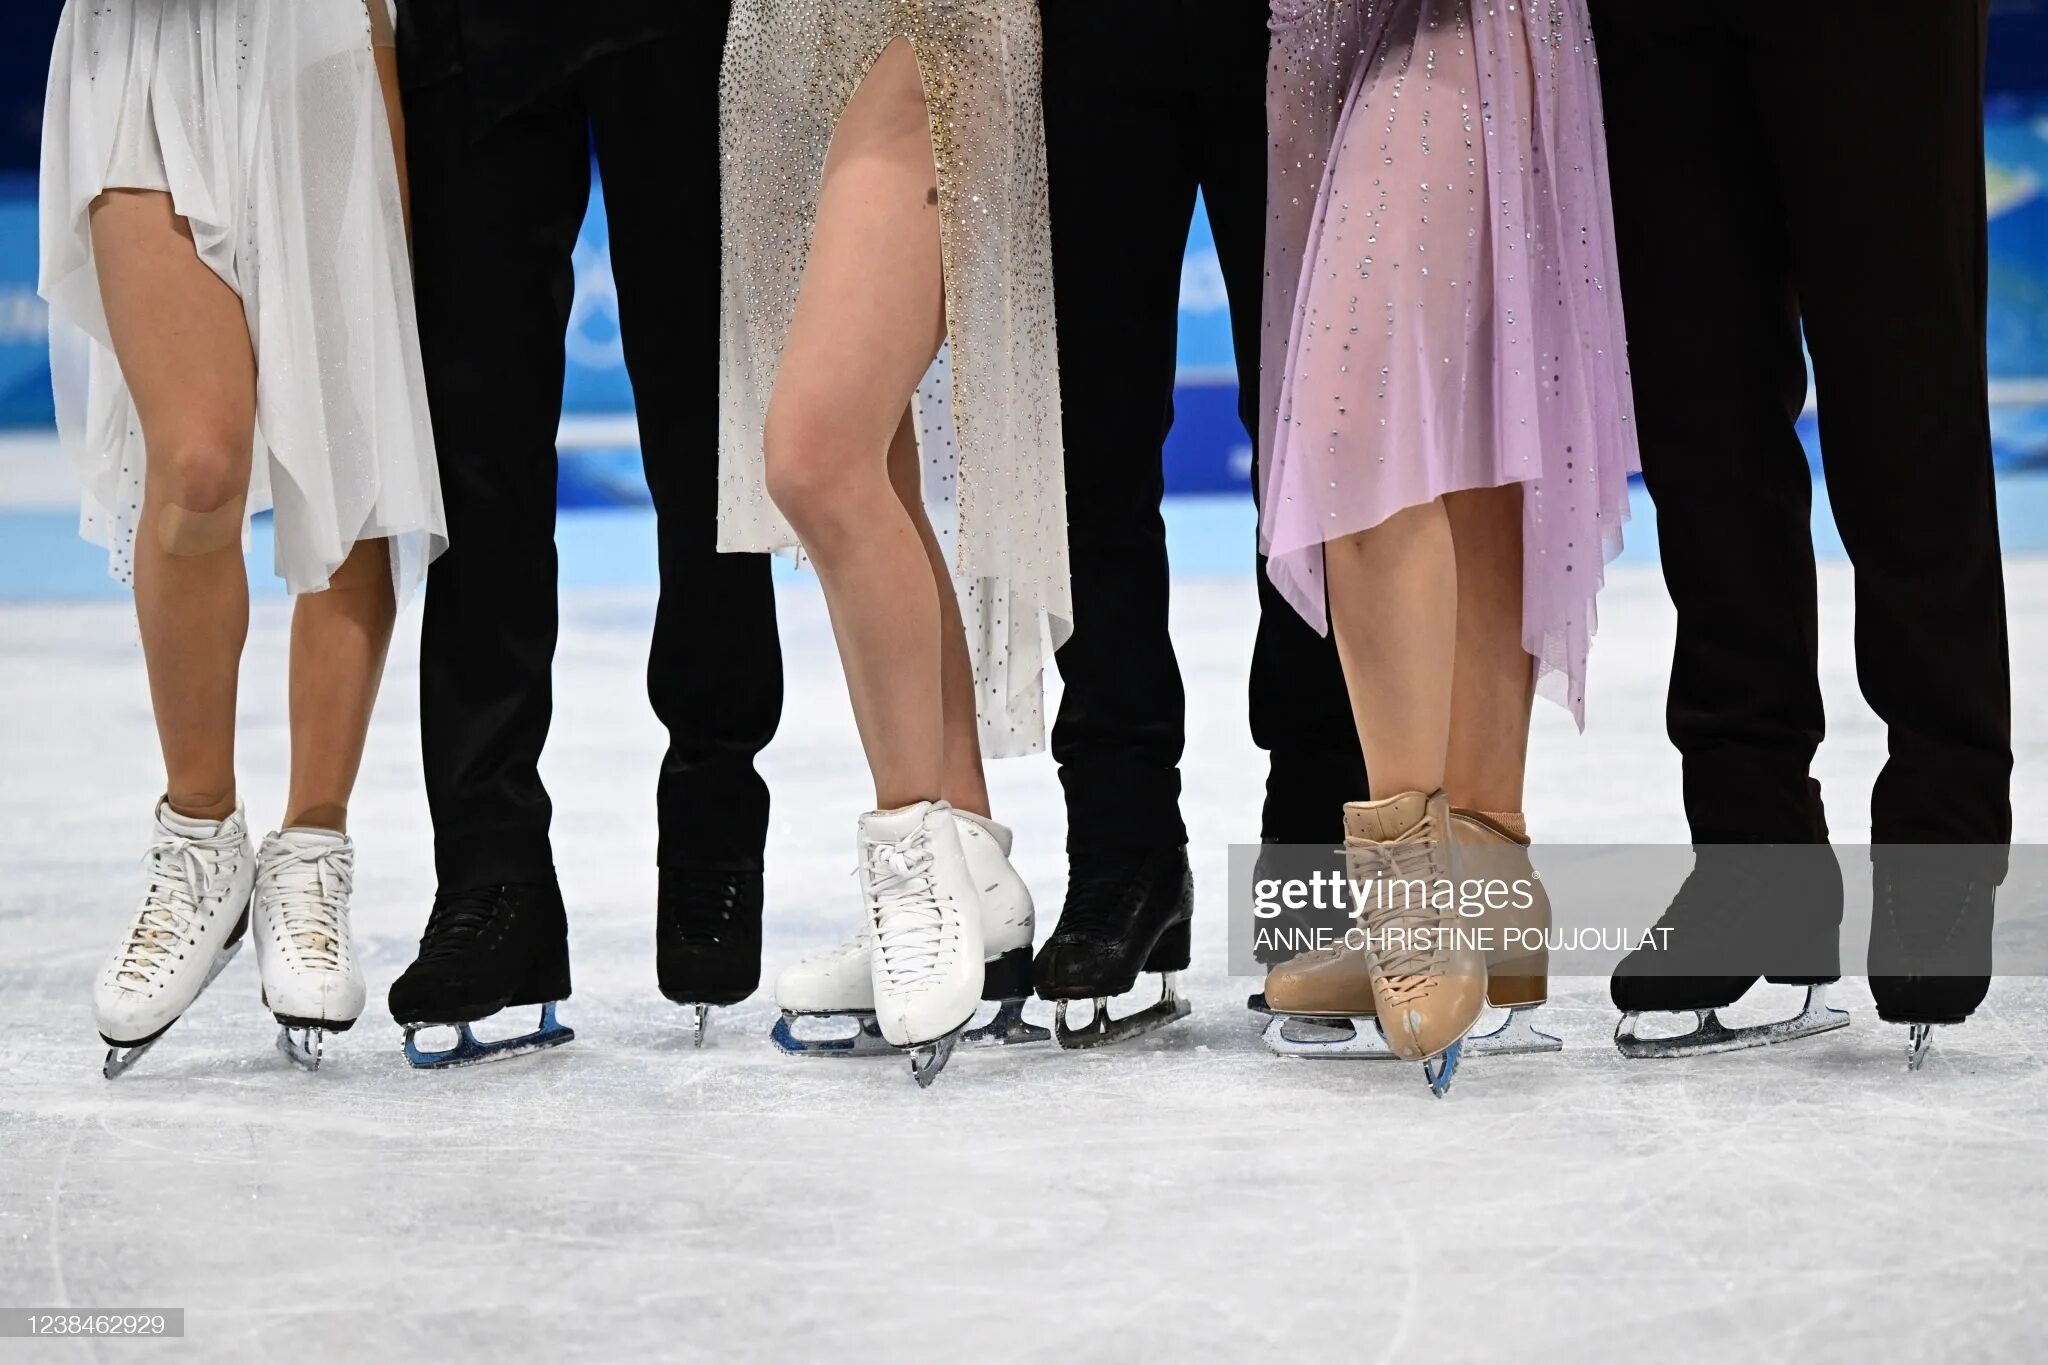 Танцы на льду на Олимпийских играх 2022. Цветочная церемония фигурное катание. Загитова фото на церемонии. Загитова в прозрачном платье на церемонии. Танцы на льду результаты